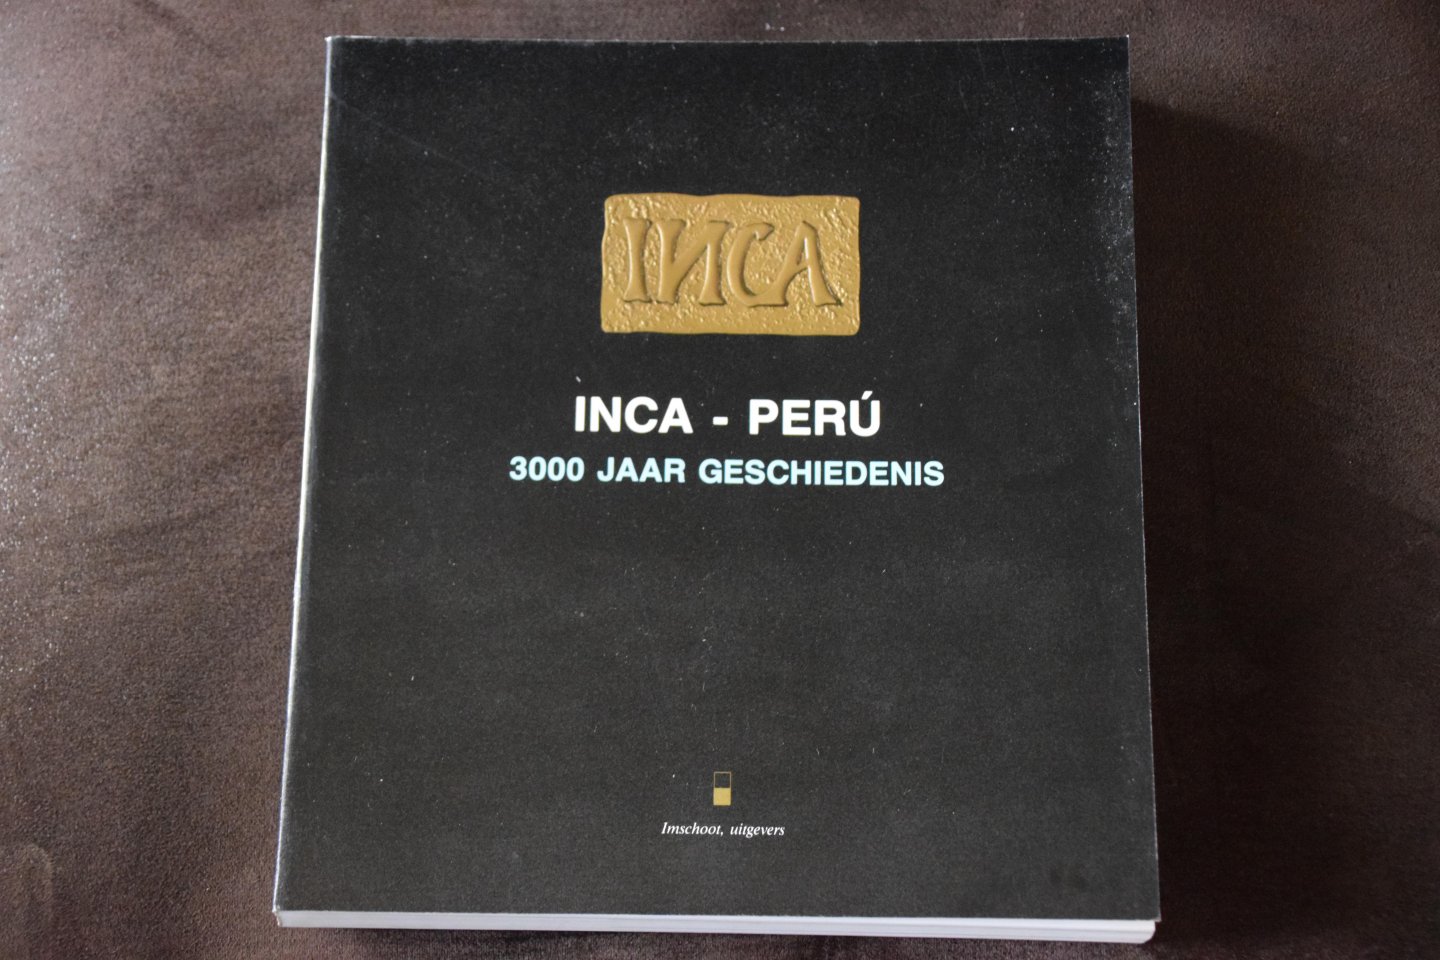  - Inca-peru 3000 jaar geschiedenis / druk 1